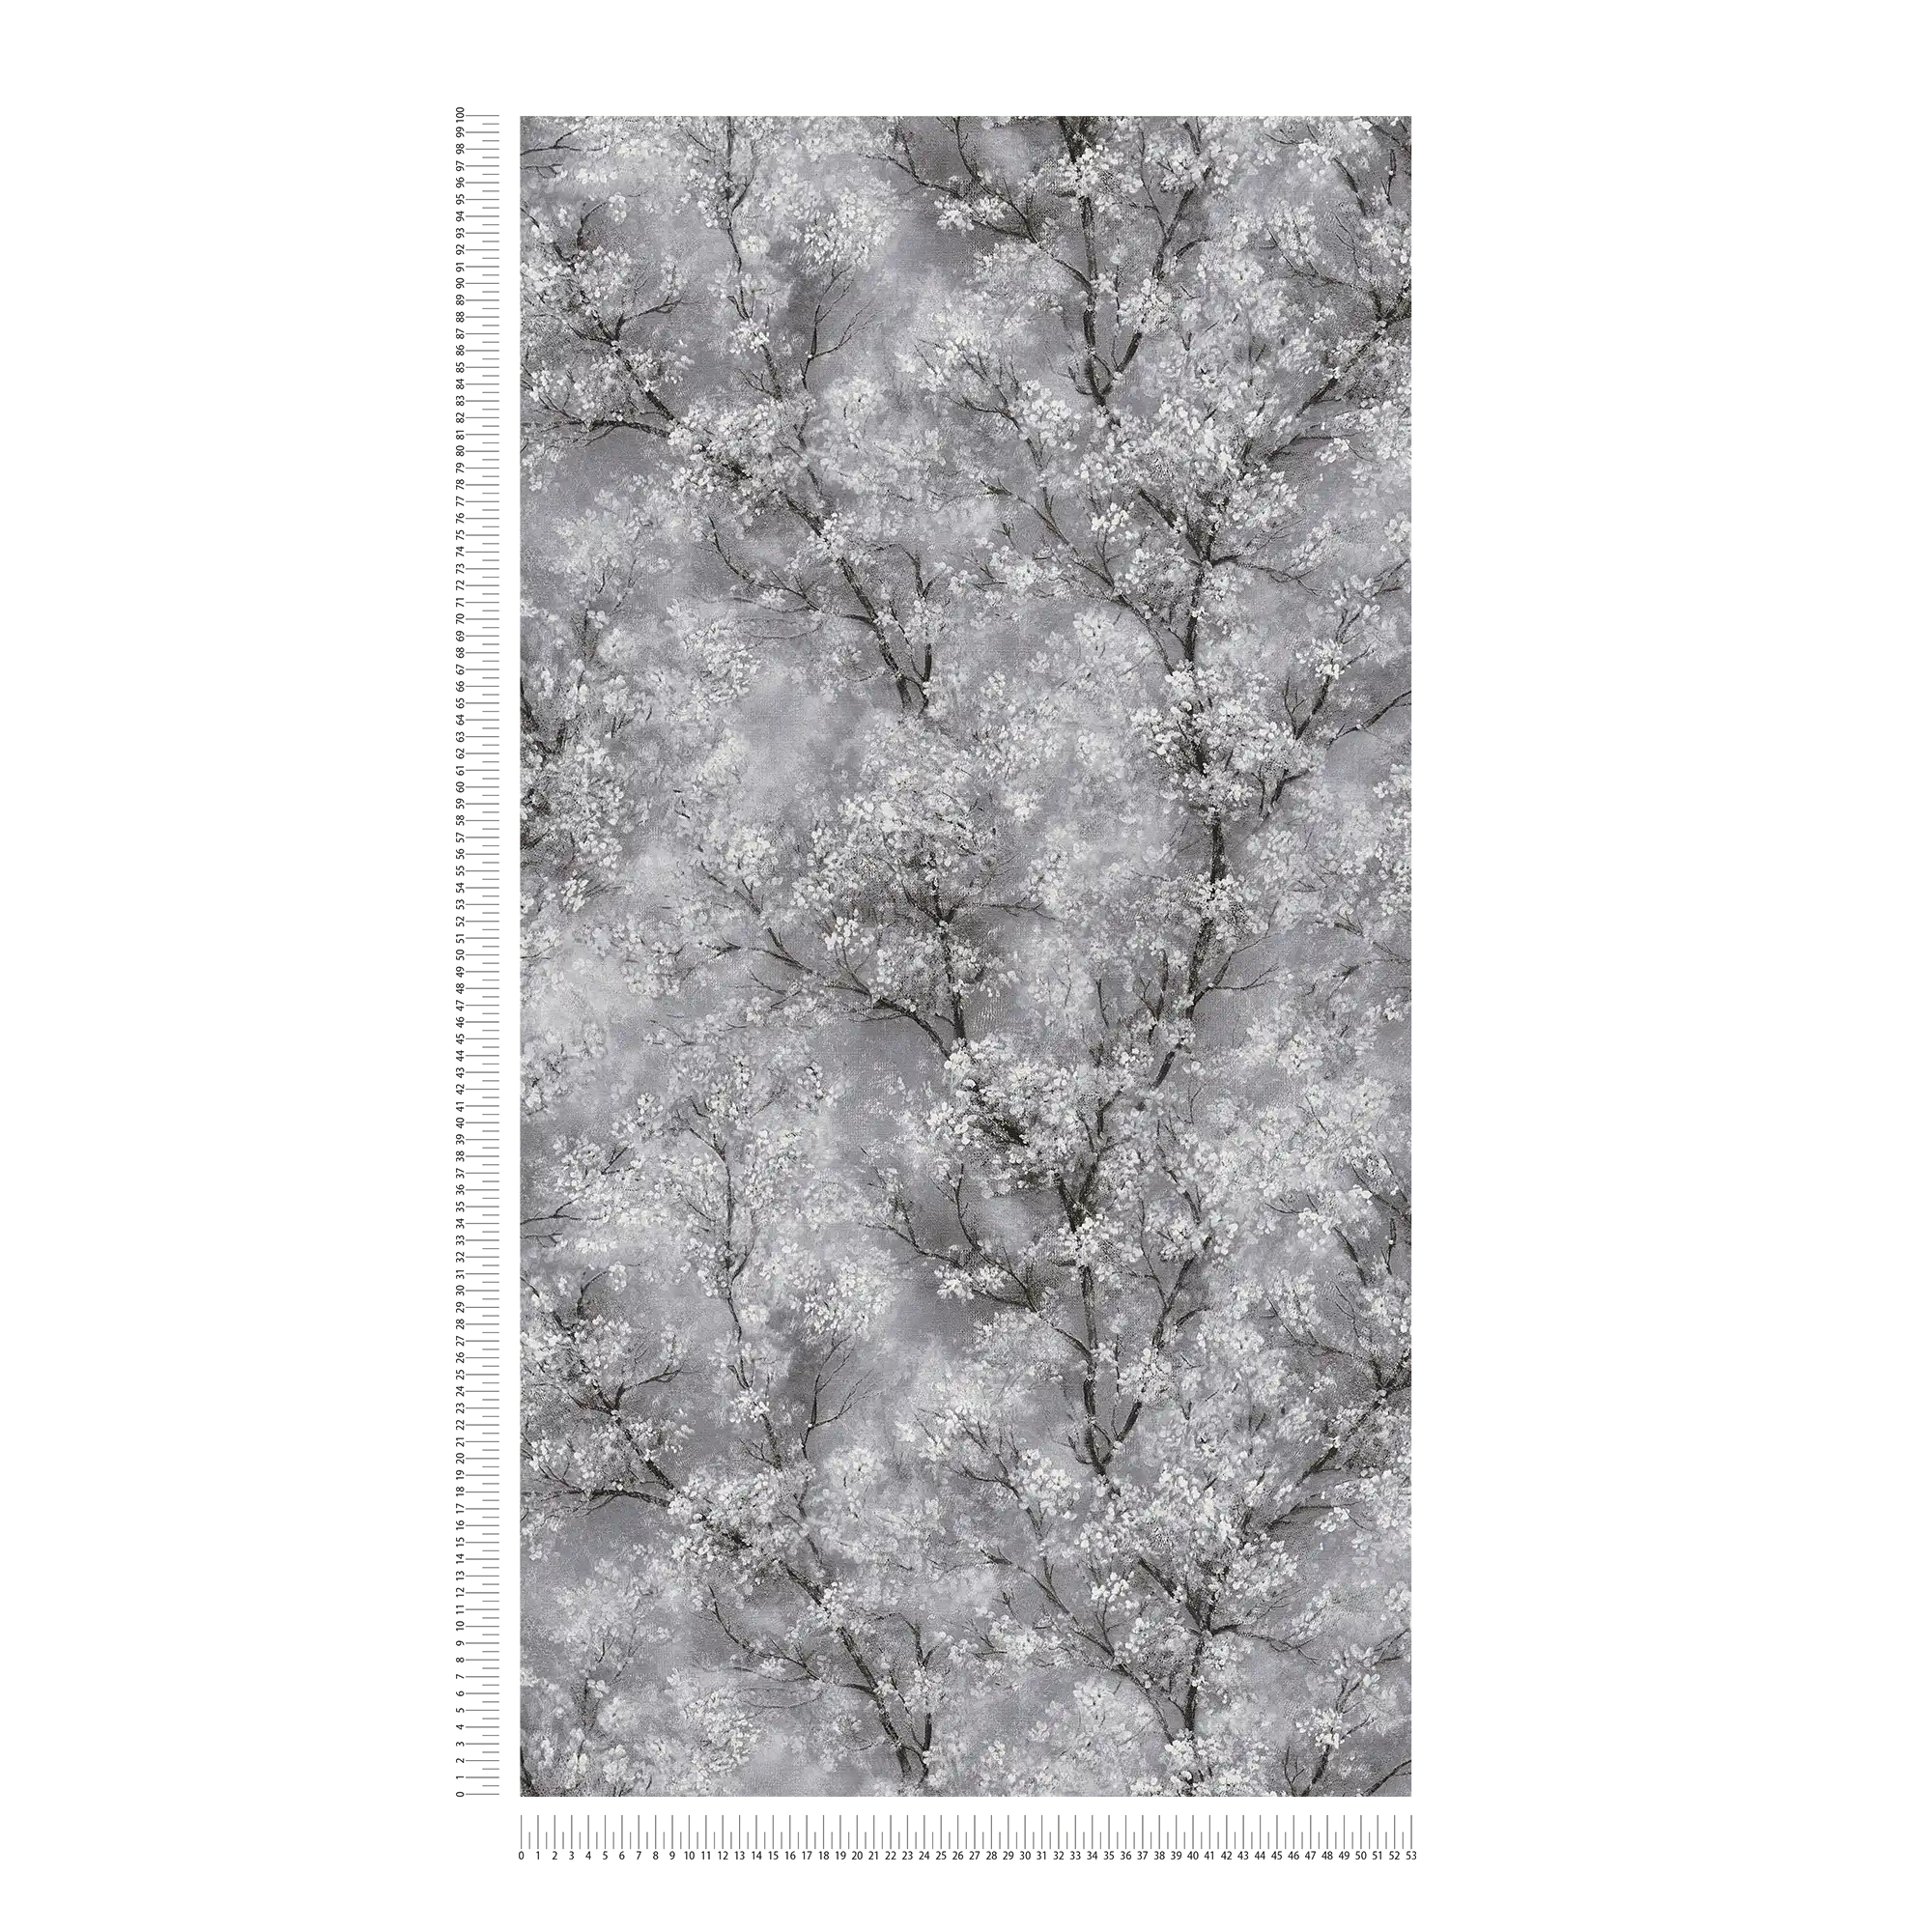             Carta da parati effetto glitter ciliegio in fiore - grigio, nero, bianco
        